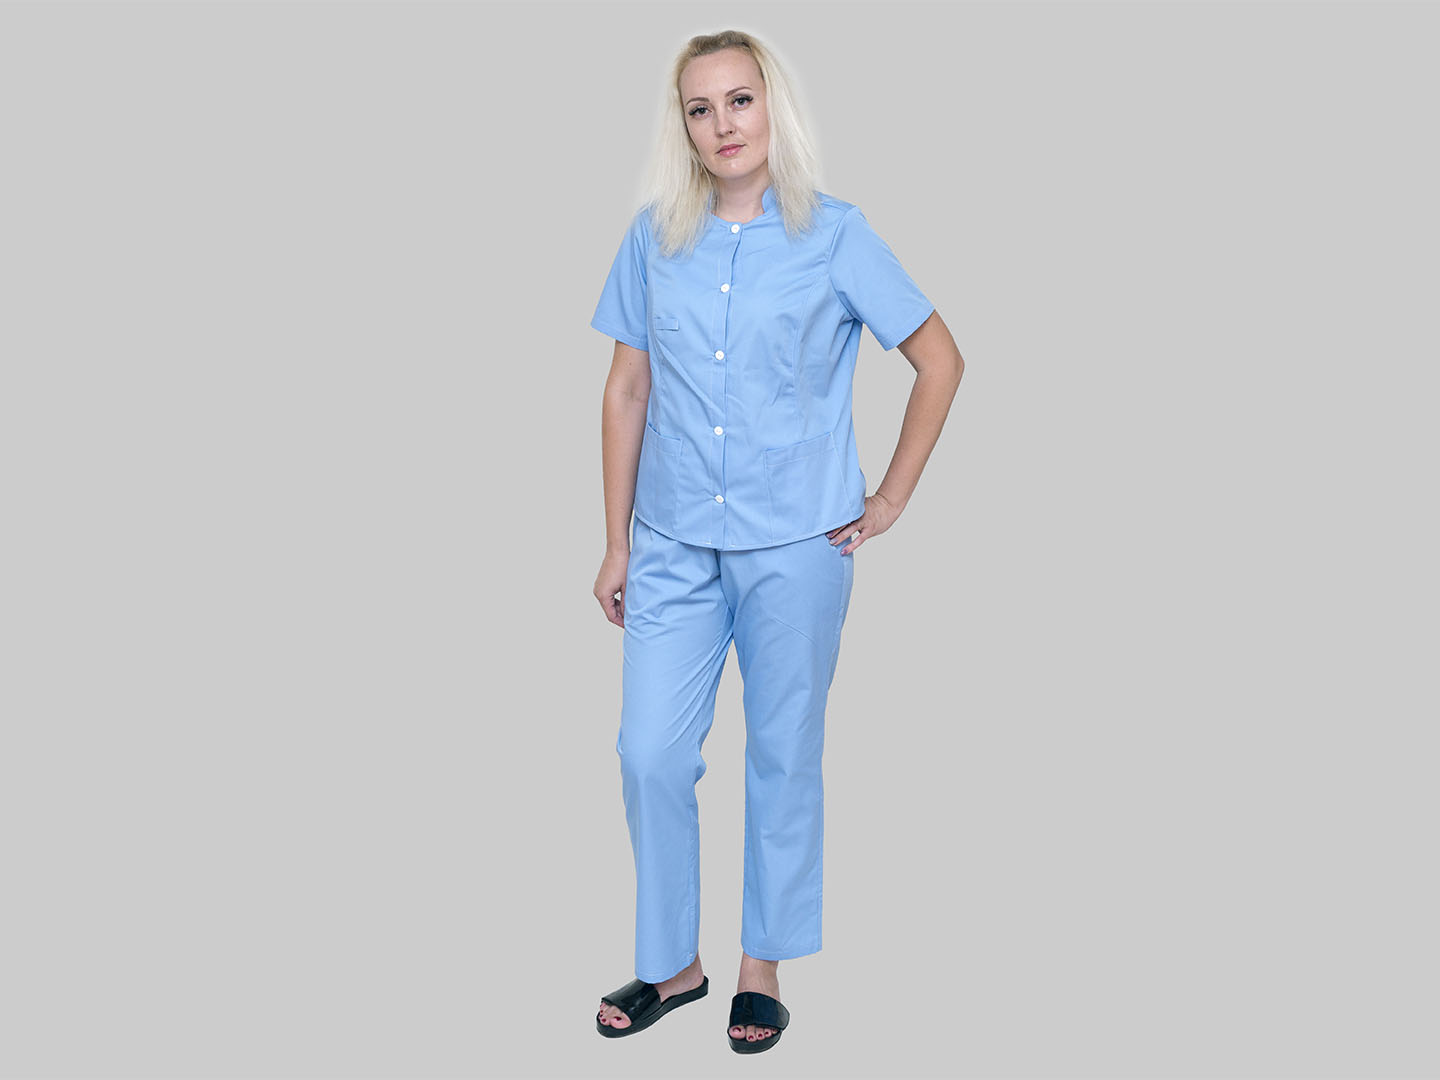 Женский костюм медицинский многоразовый голубой